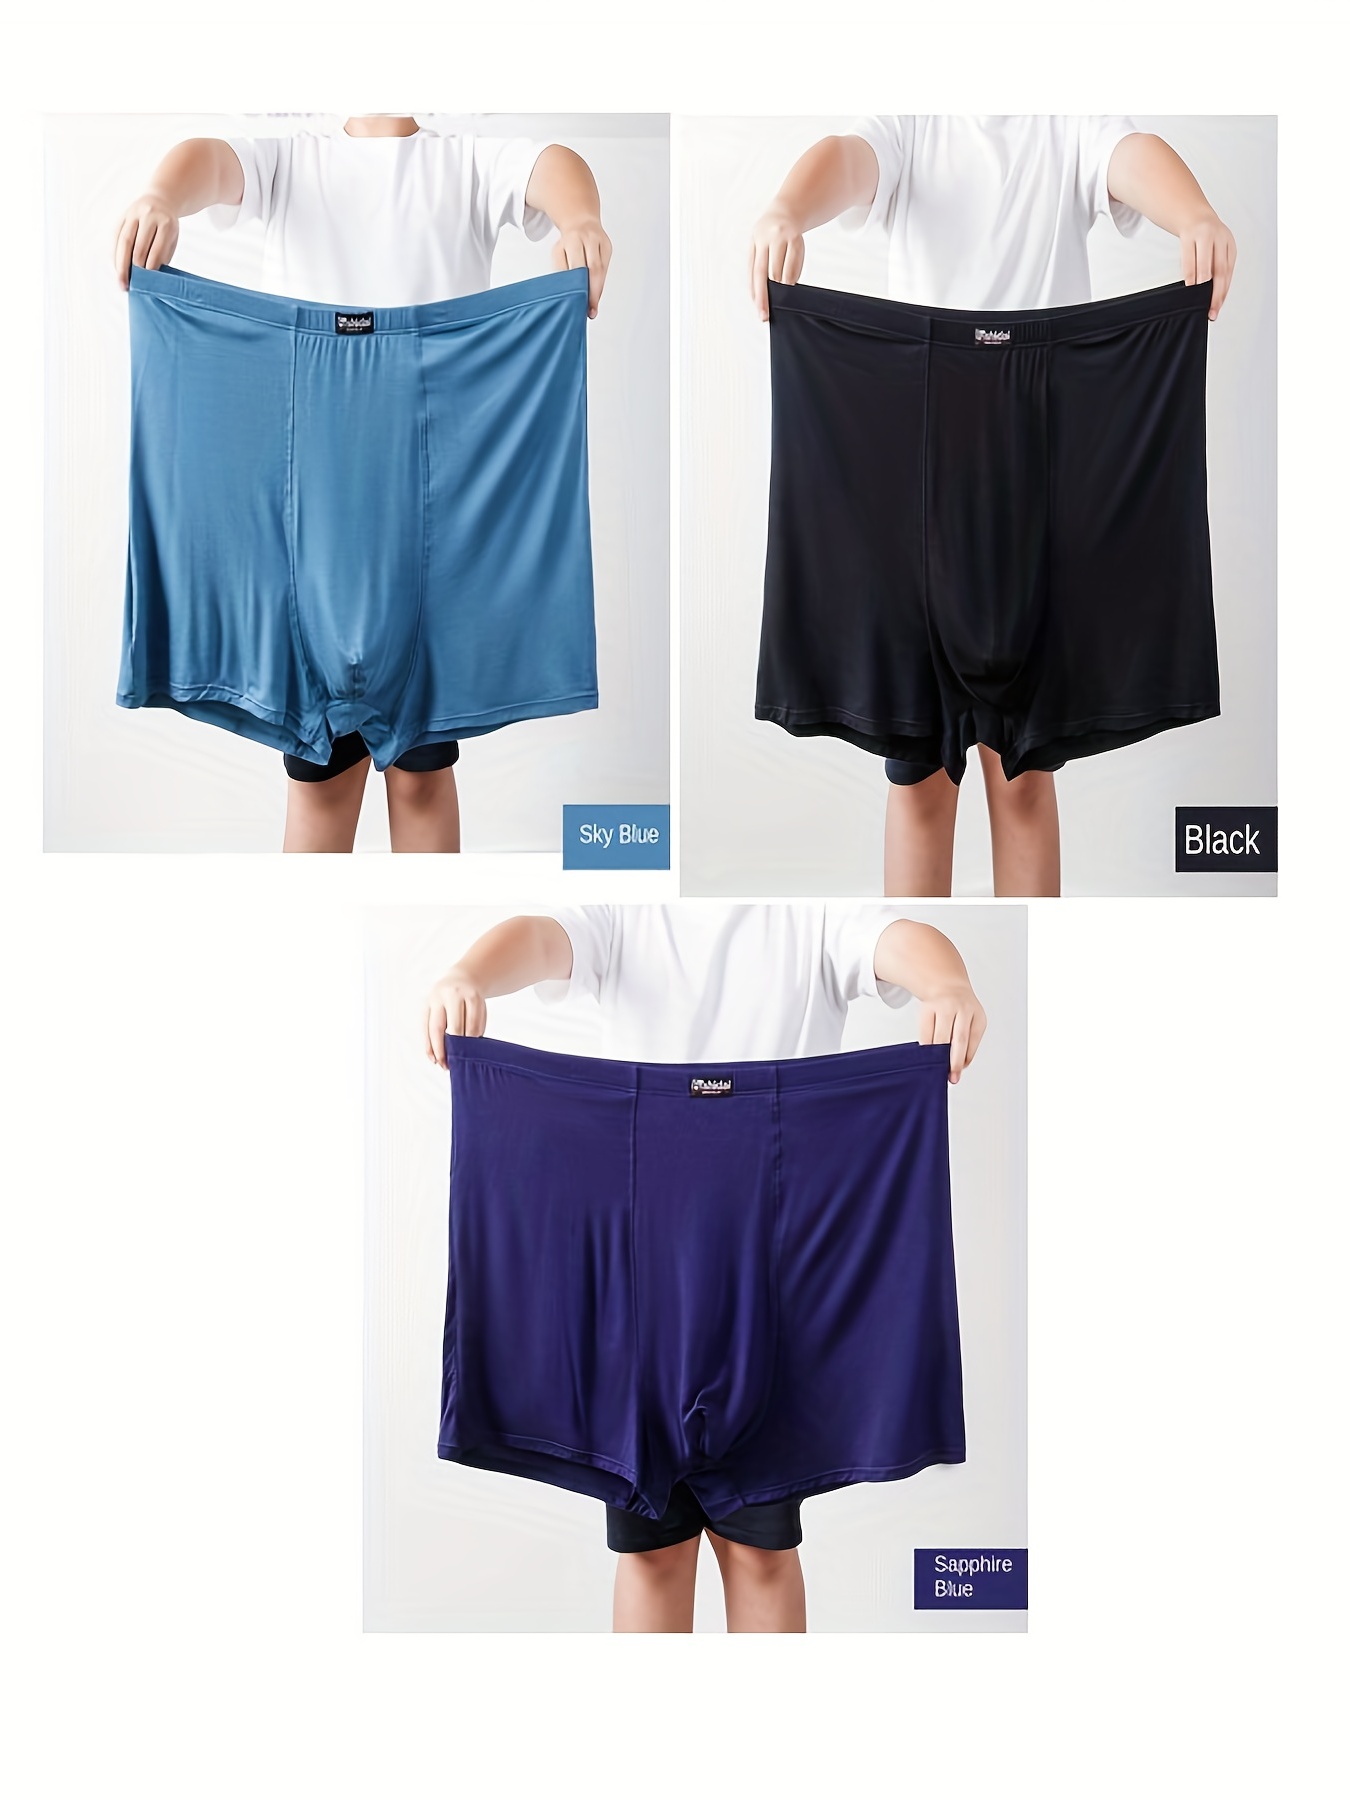 3PCS/2PCS Men's cotton underwear boxer shorts plaid shorts soft Boxer Plaid loose  cotton arrow pants